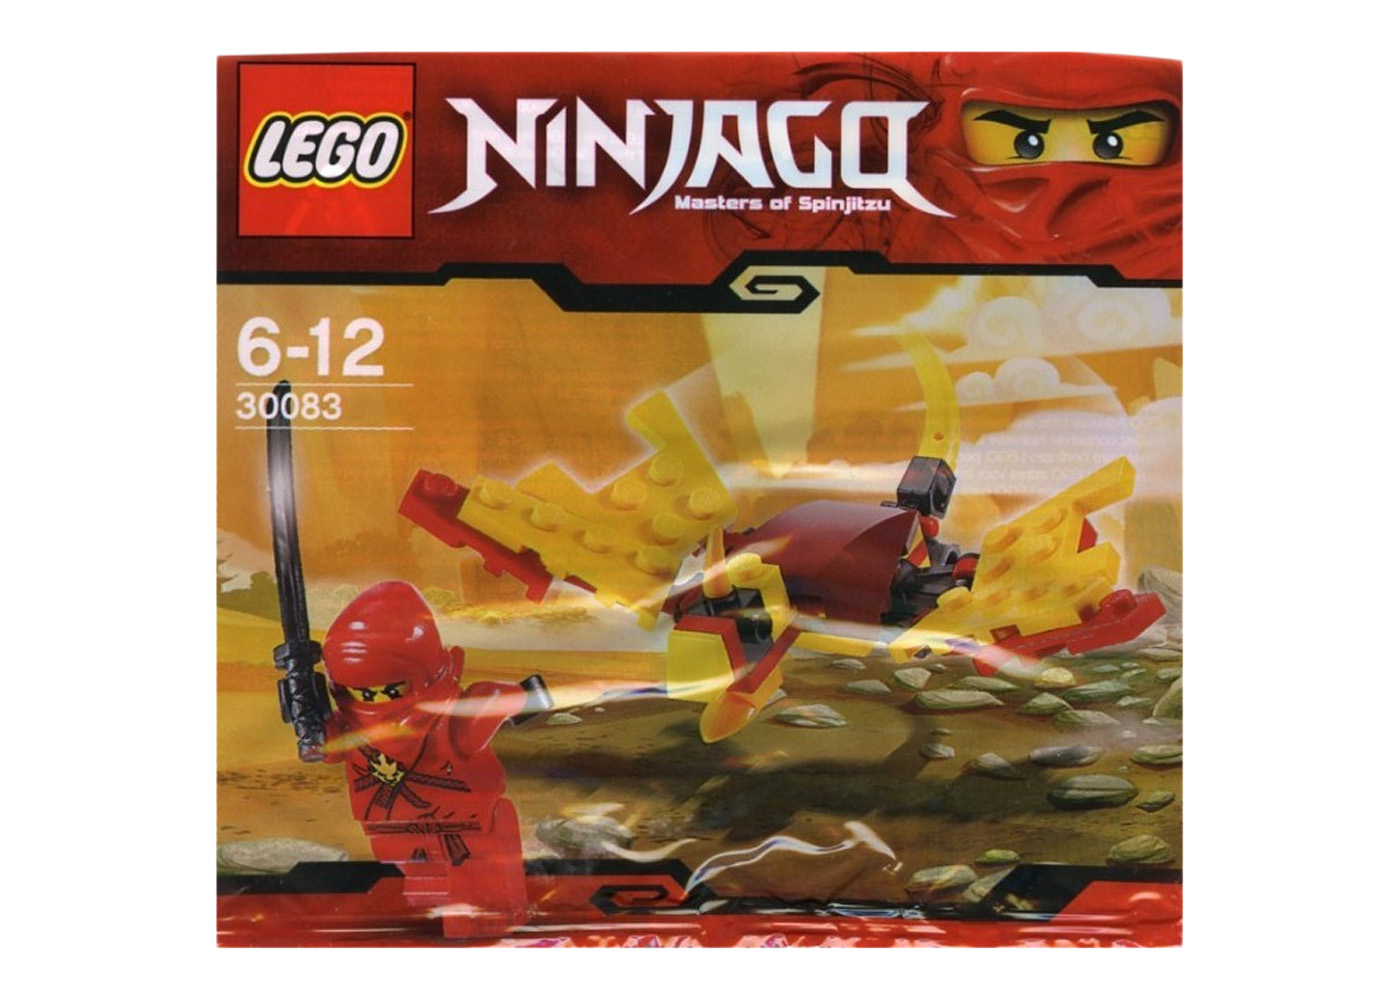 LEGO Ninjago Dragon Fight Set 30083